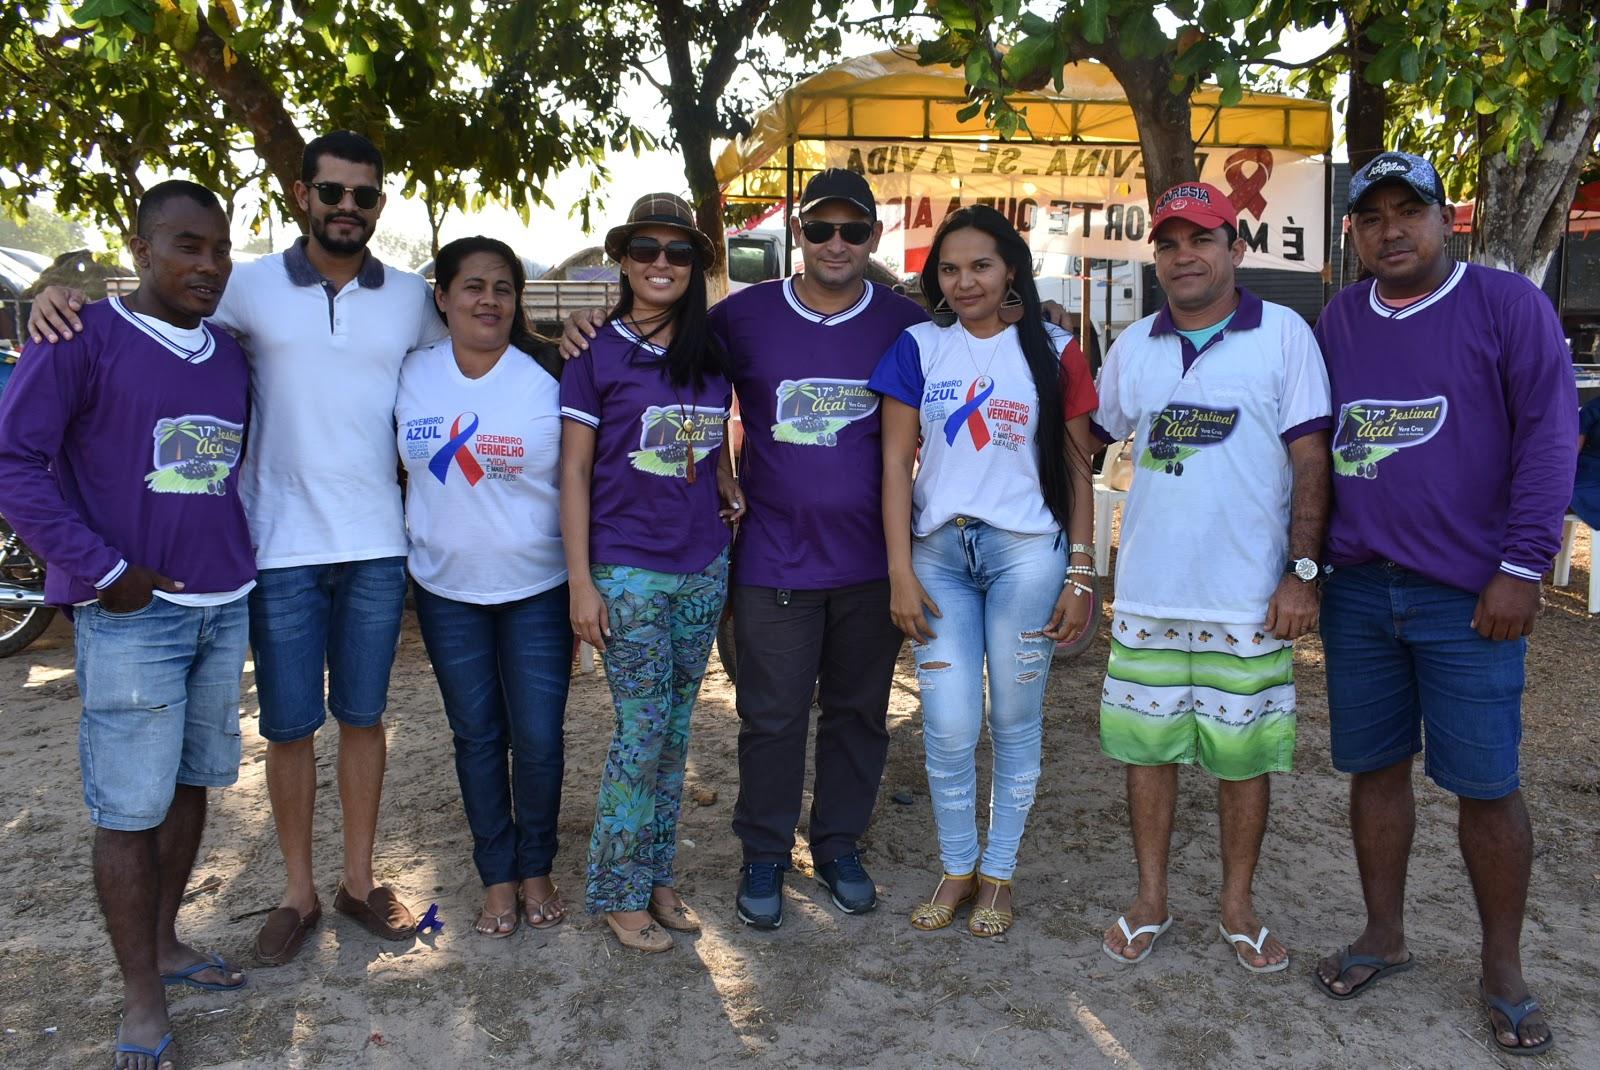 Cultura viva: Festival do Açaí de Junco do Maranhão entra para o calendário cultural da região Alto Turi